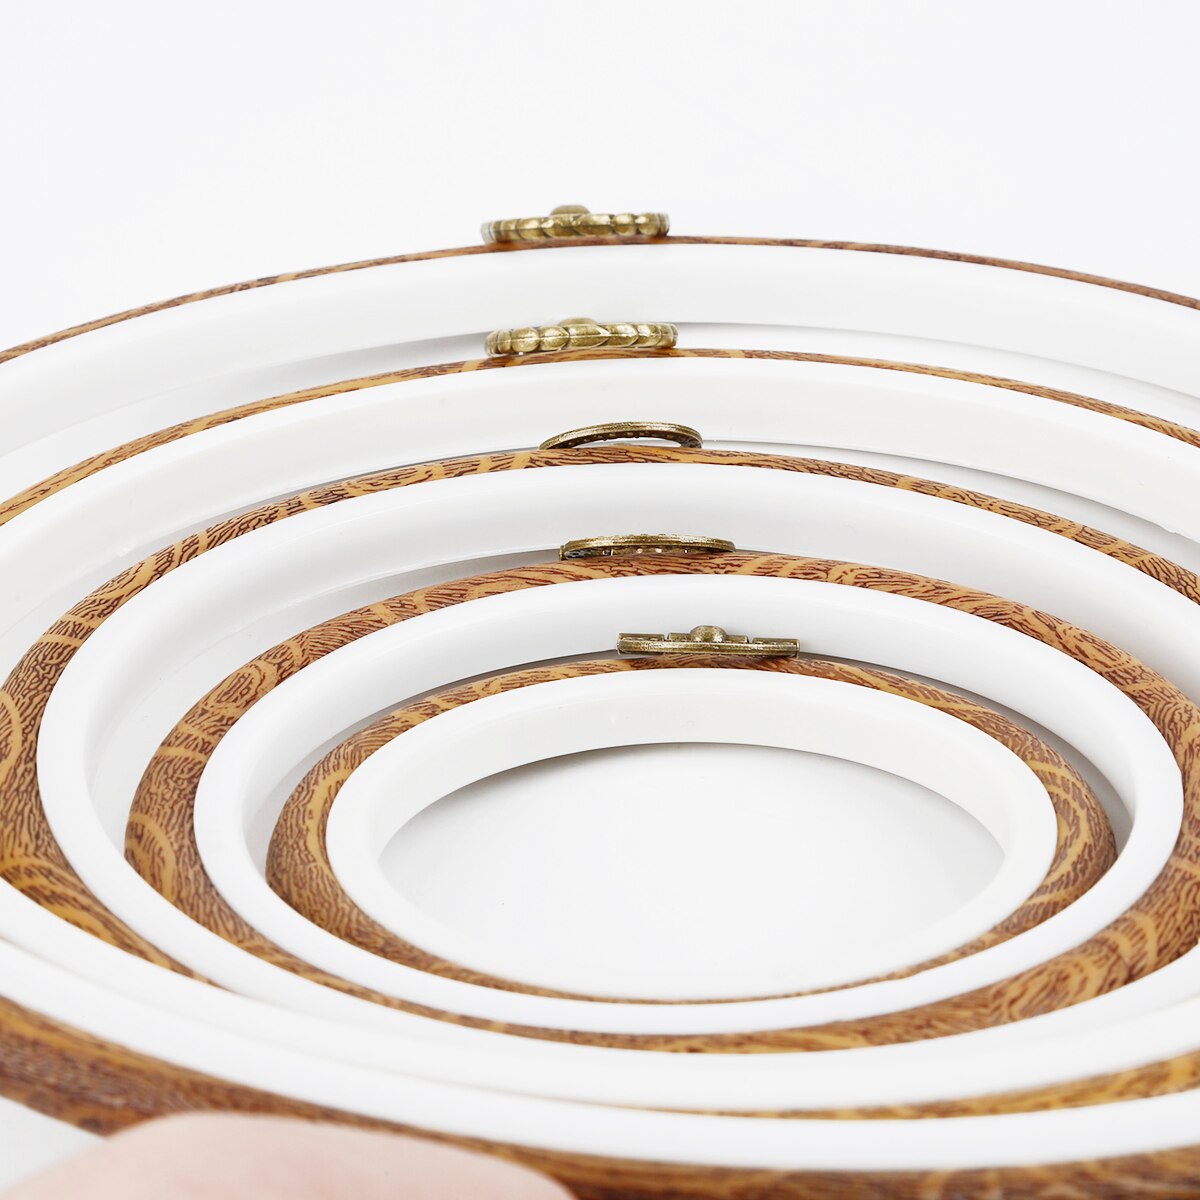 10-25 cm plast broderi ring værktøj ring cirkel rund løkke til gør-det-selv håndværk korssting maskine syning husholdningsværktøj